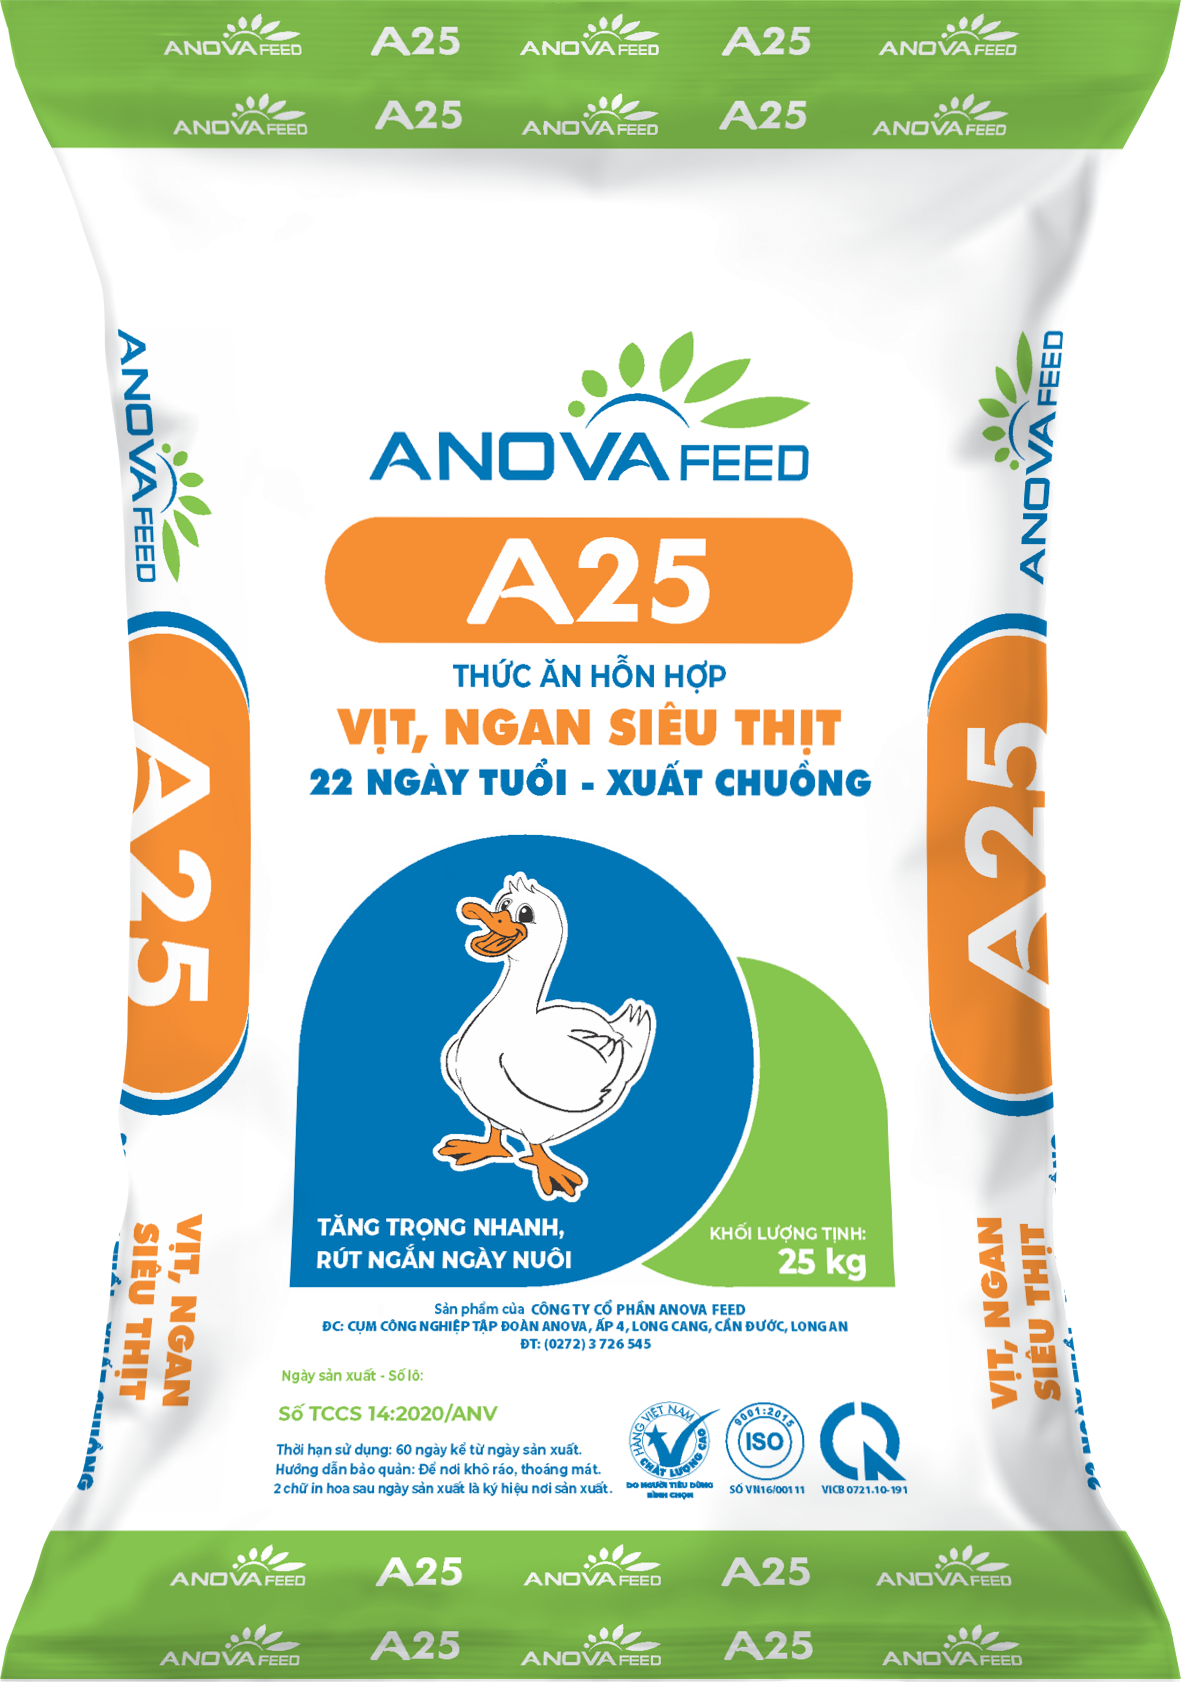 Duck fattening feed (22 days - market)